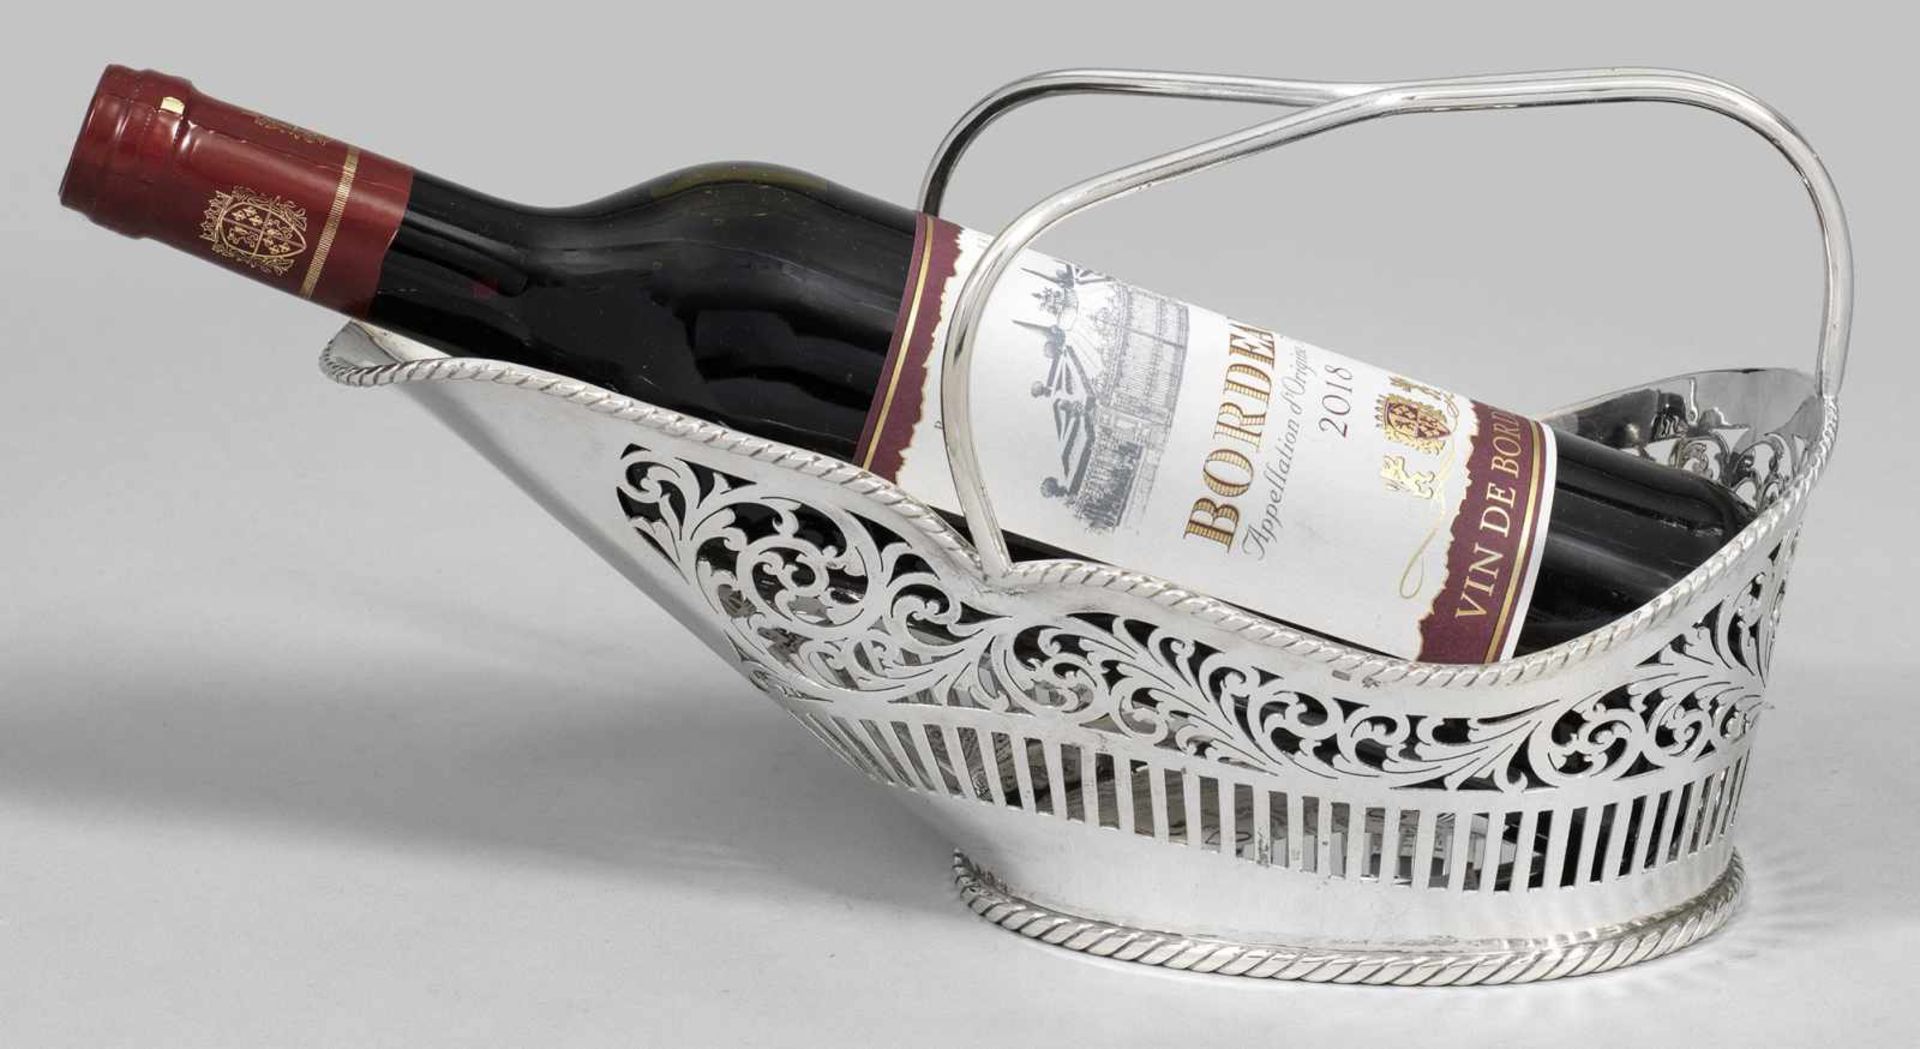 WeinflaschenkorbSilber. Dekorativ gestaltet in Form eines zweihenkeligen, ovoiden Korbes. Stab-